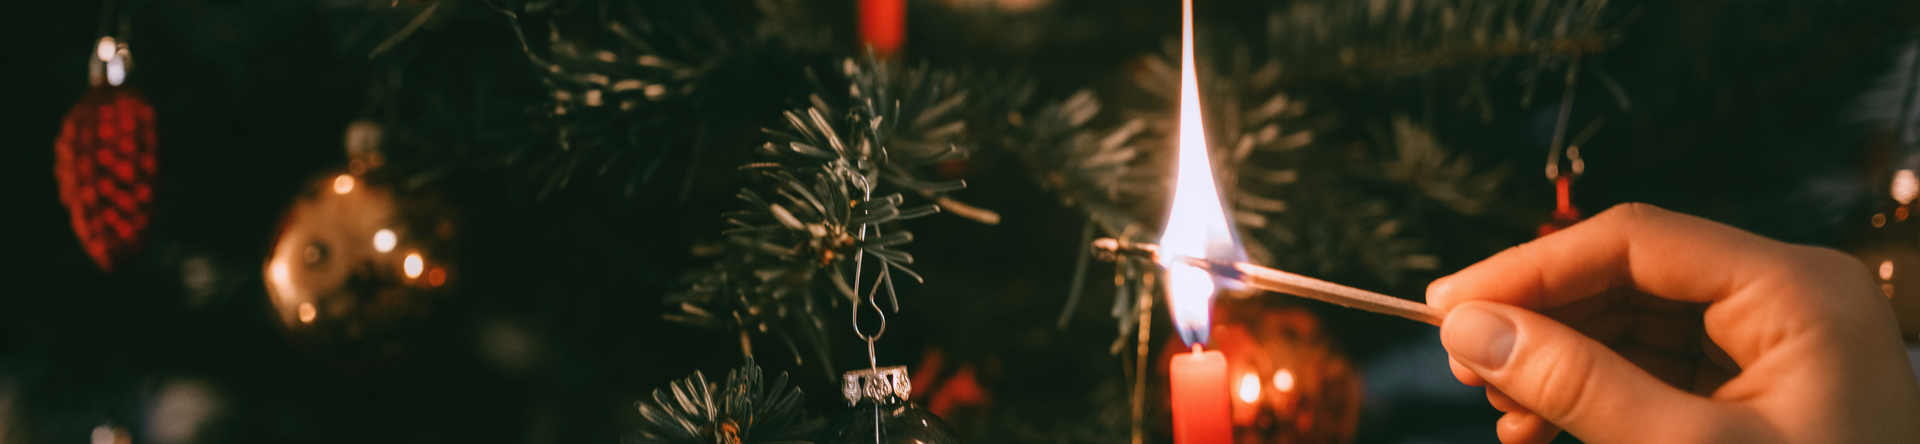 Lichterlöschen für den Weihnachtsbaum